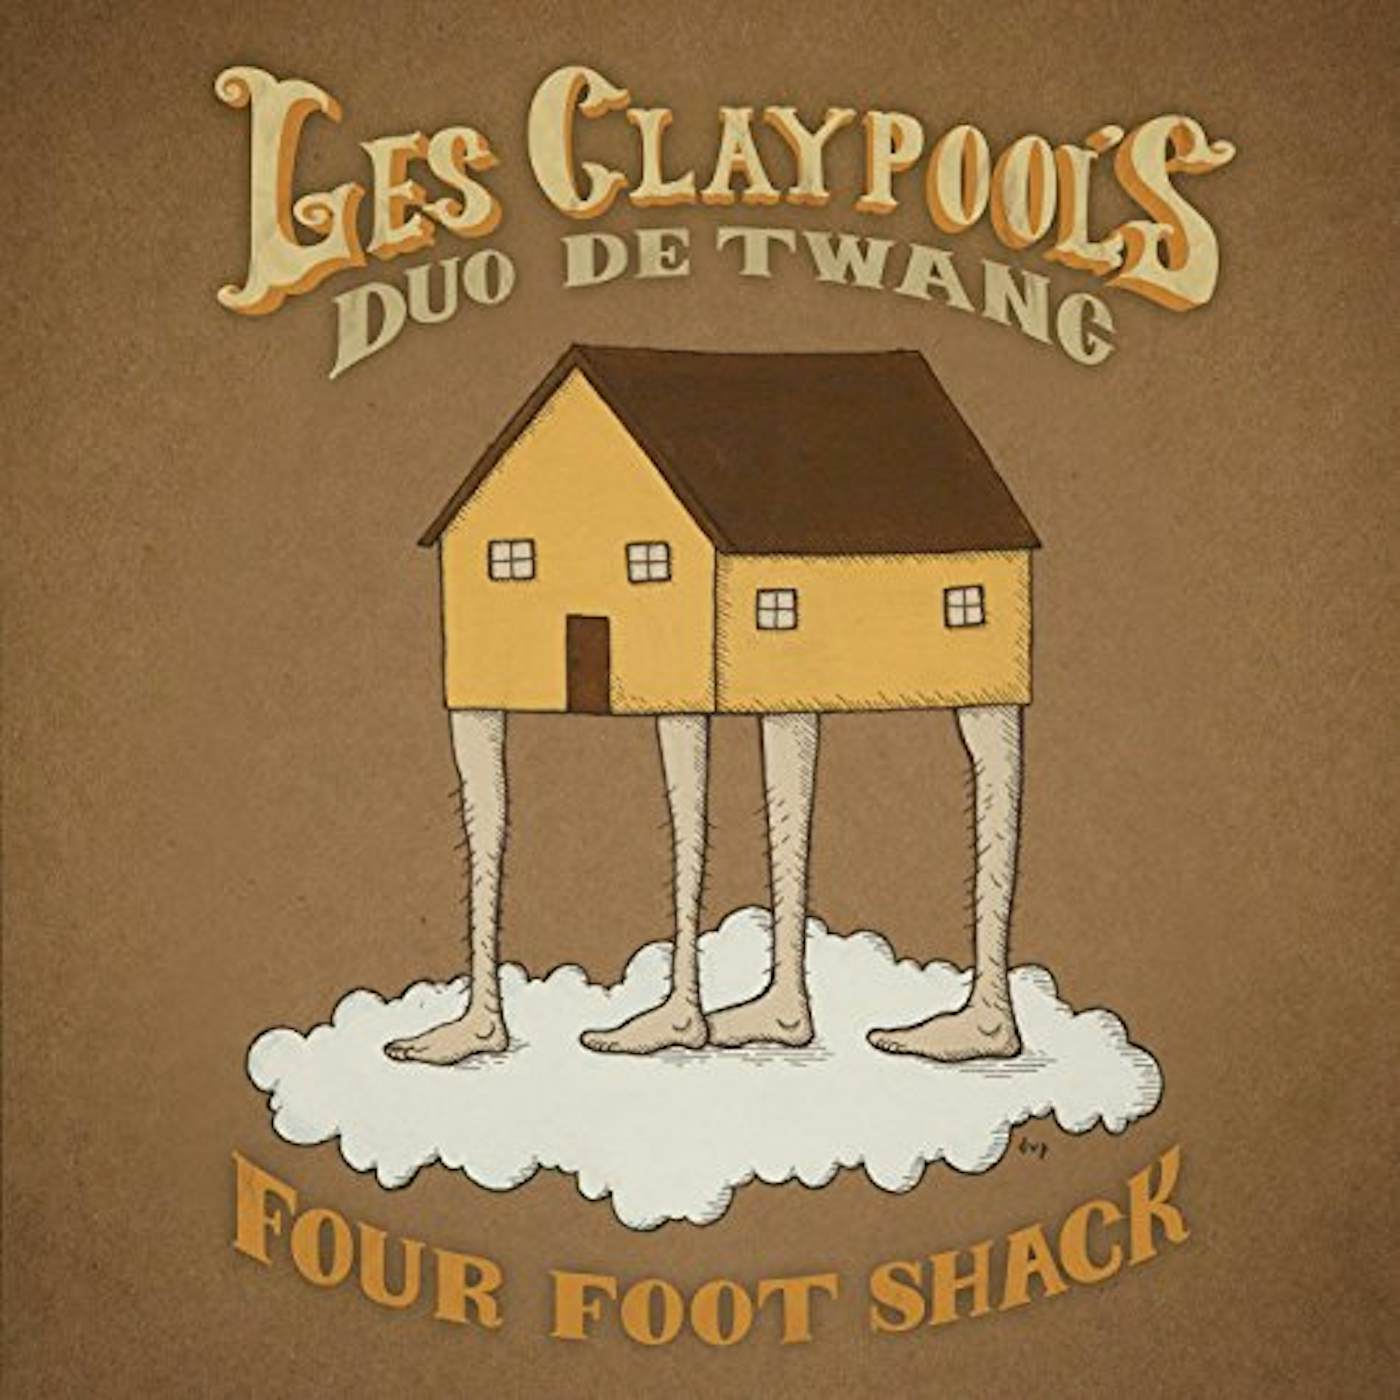 Les Claypool's Duo De Twang FOUR FOOT SHACK (GOLD NUGGET VINYL/2LP) Vinyl Record